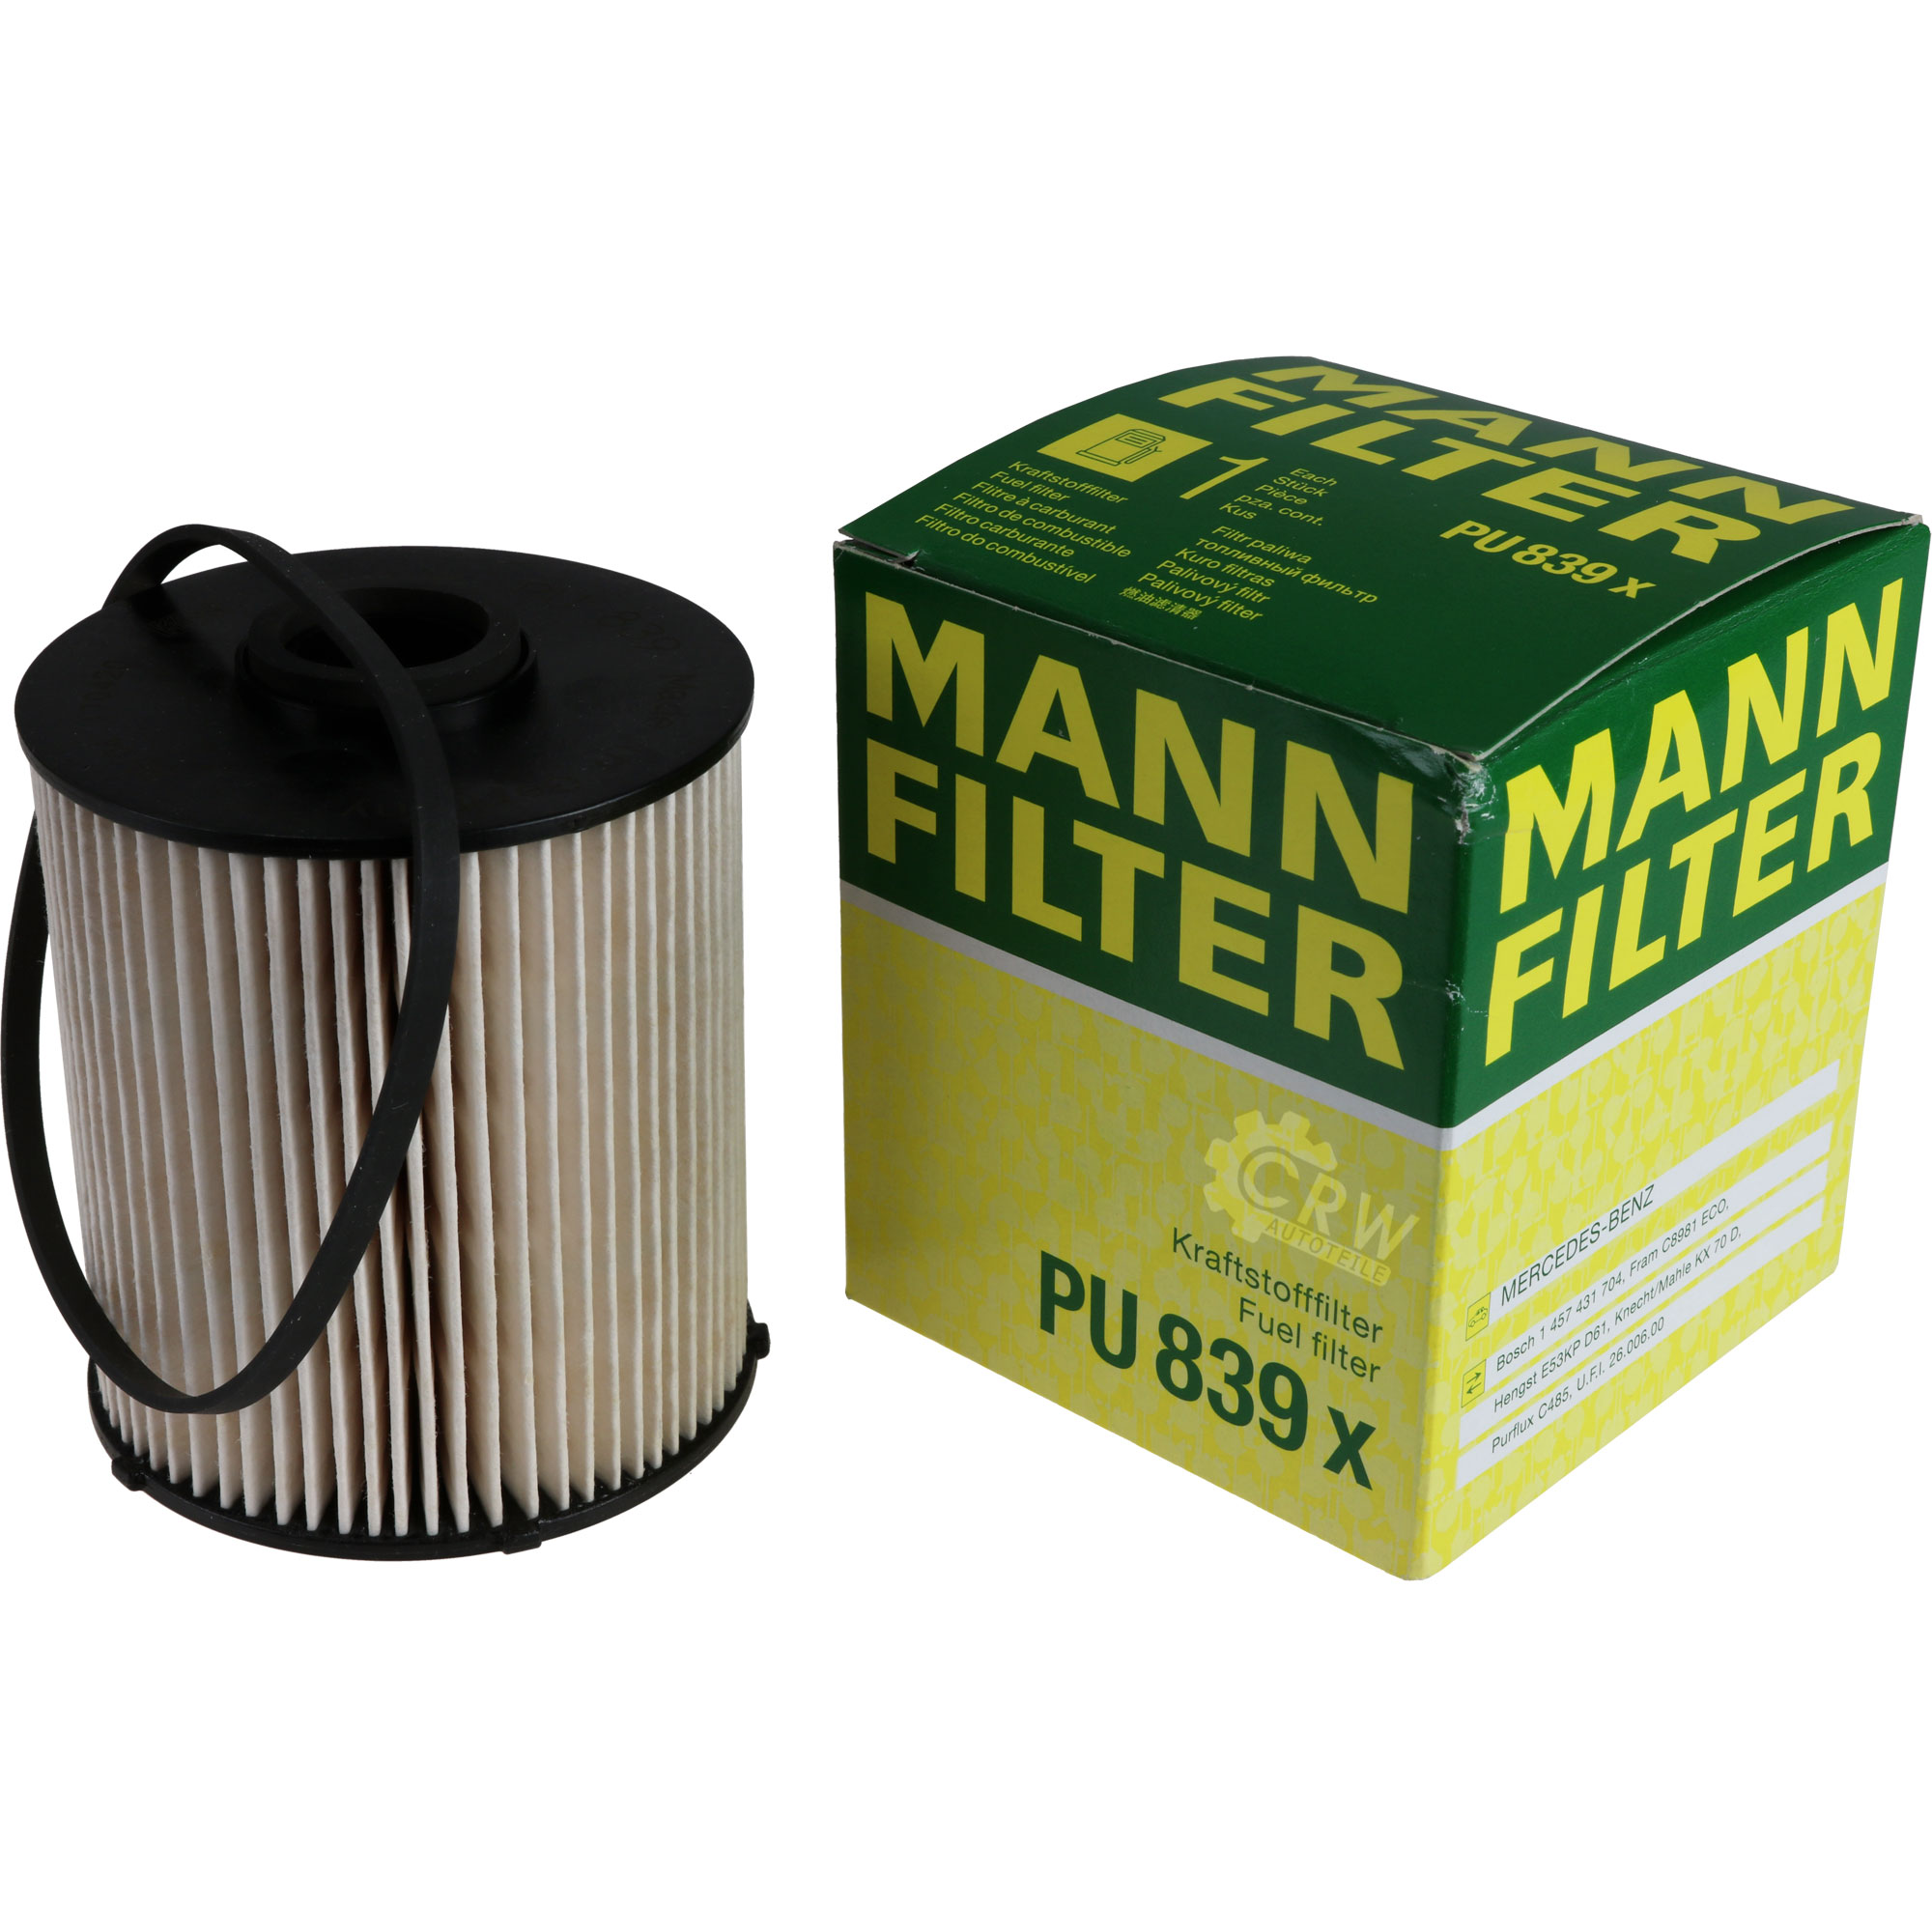 MANN-FILTER Kraftstofffilter PU 839 x Fuel Filter